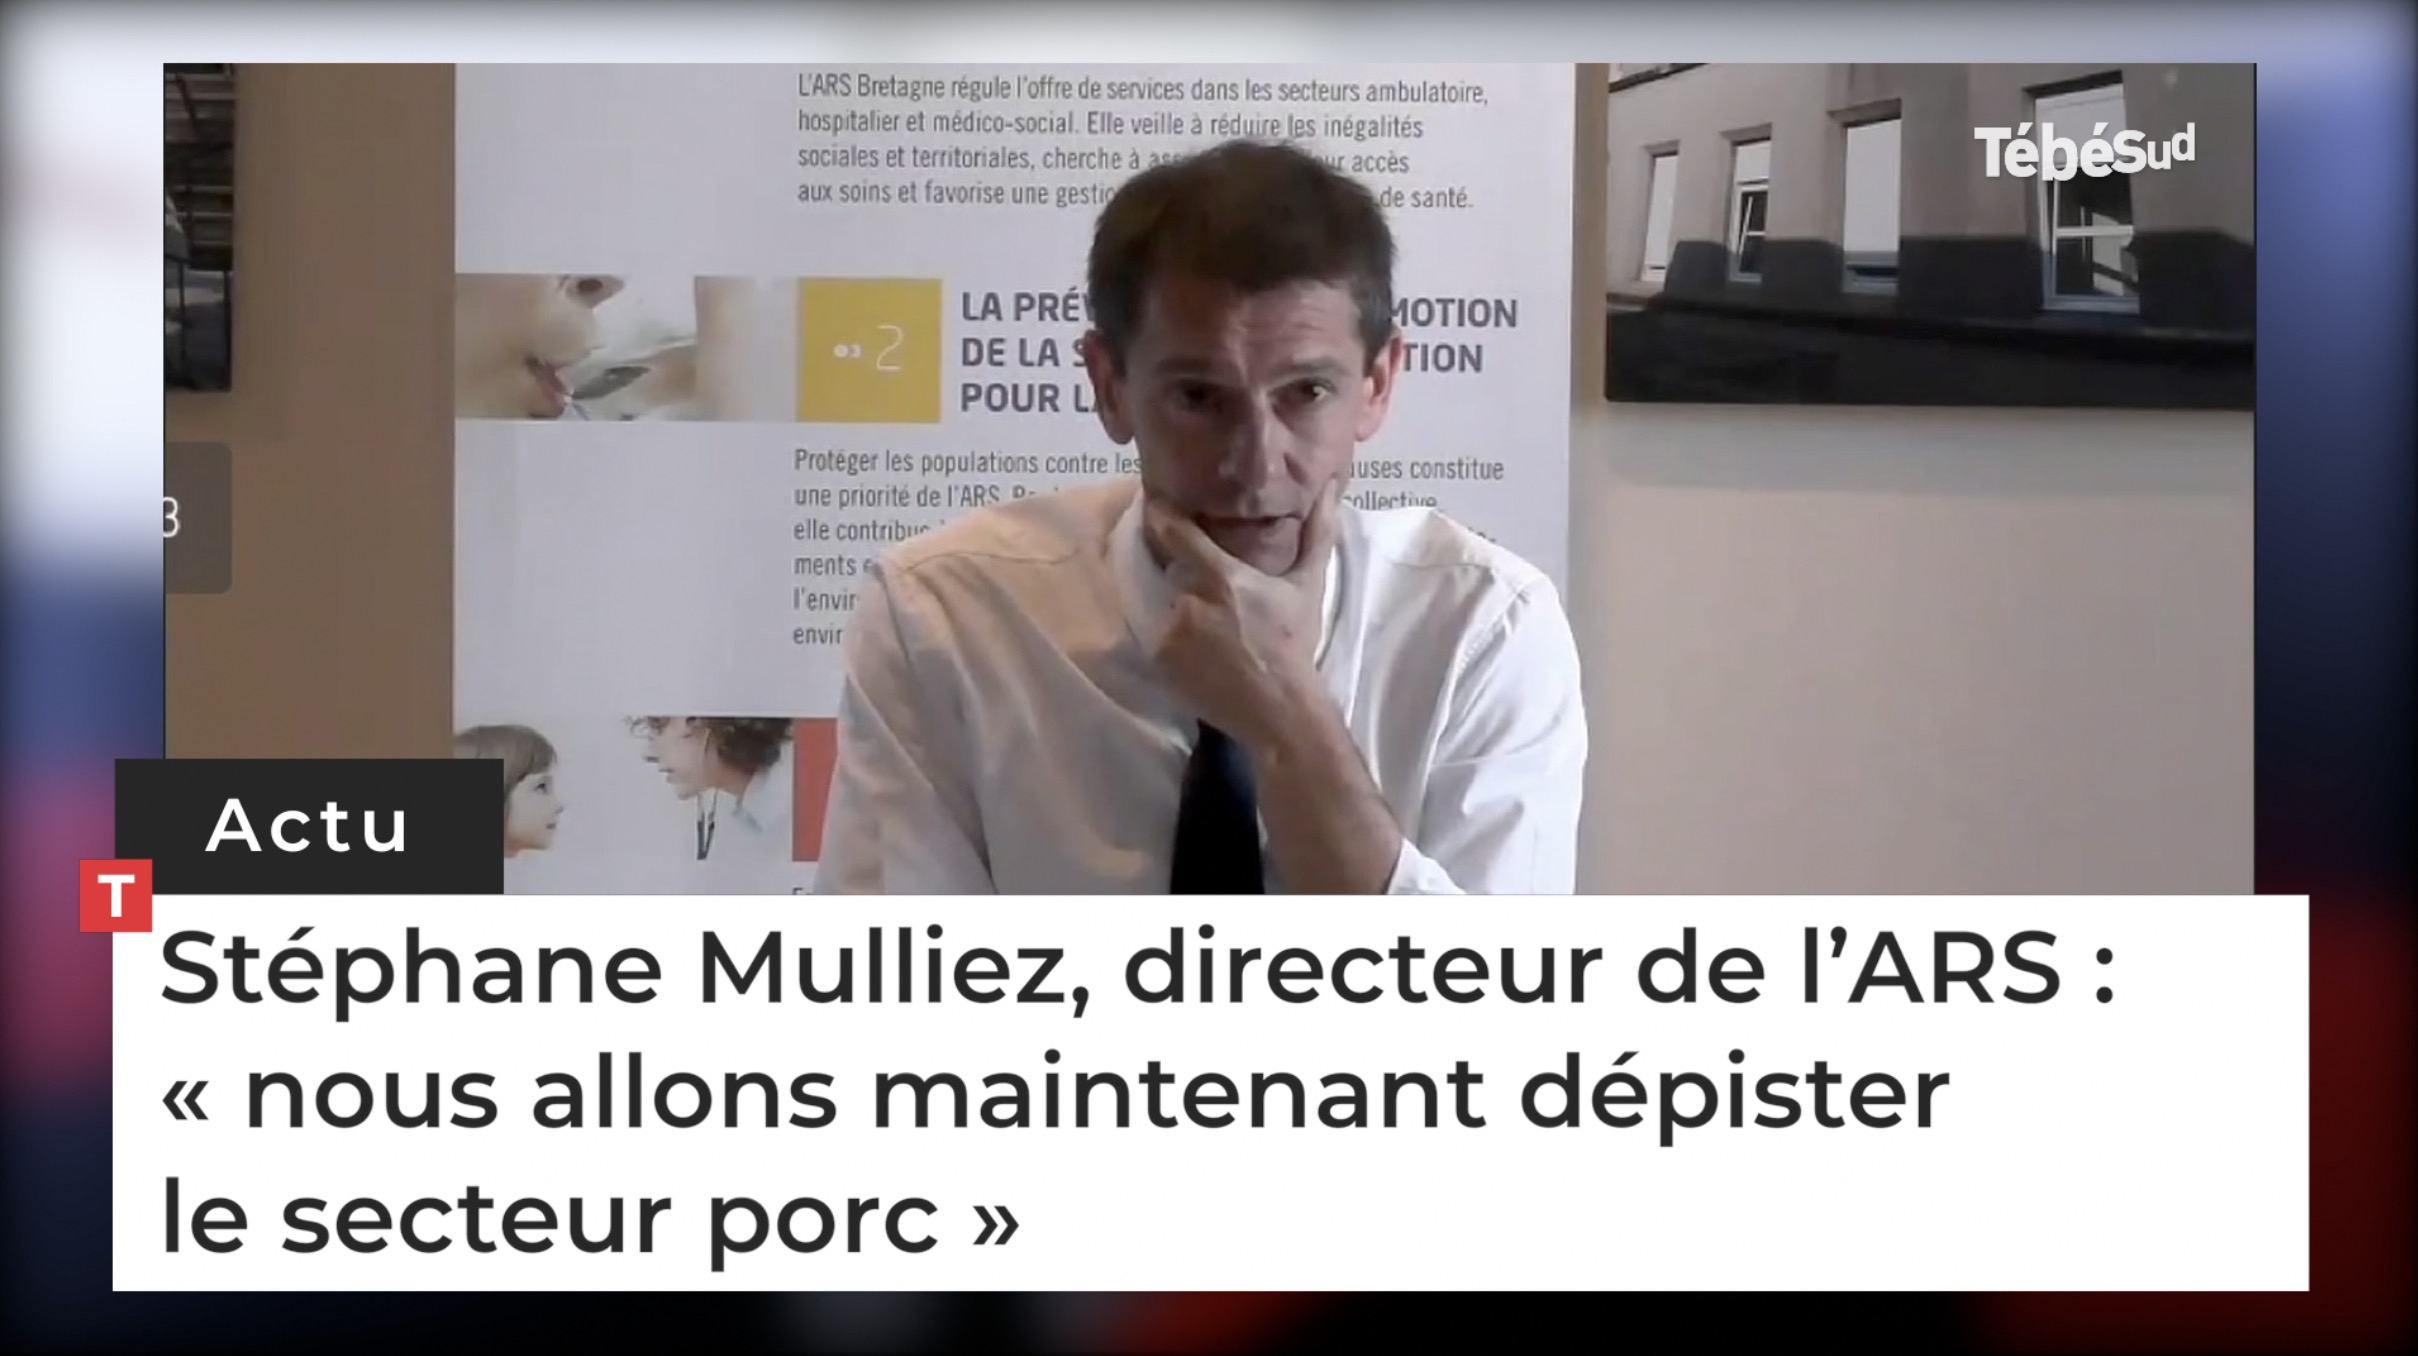 Stéphane Mulliez, directeur de l’ARS : « nous allons maintenant dépister le secteur porc » (Le Télégramme)